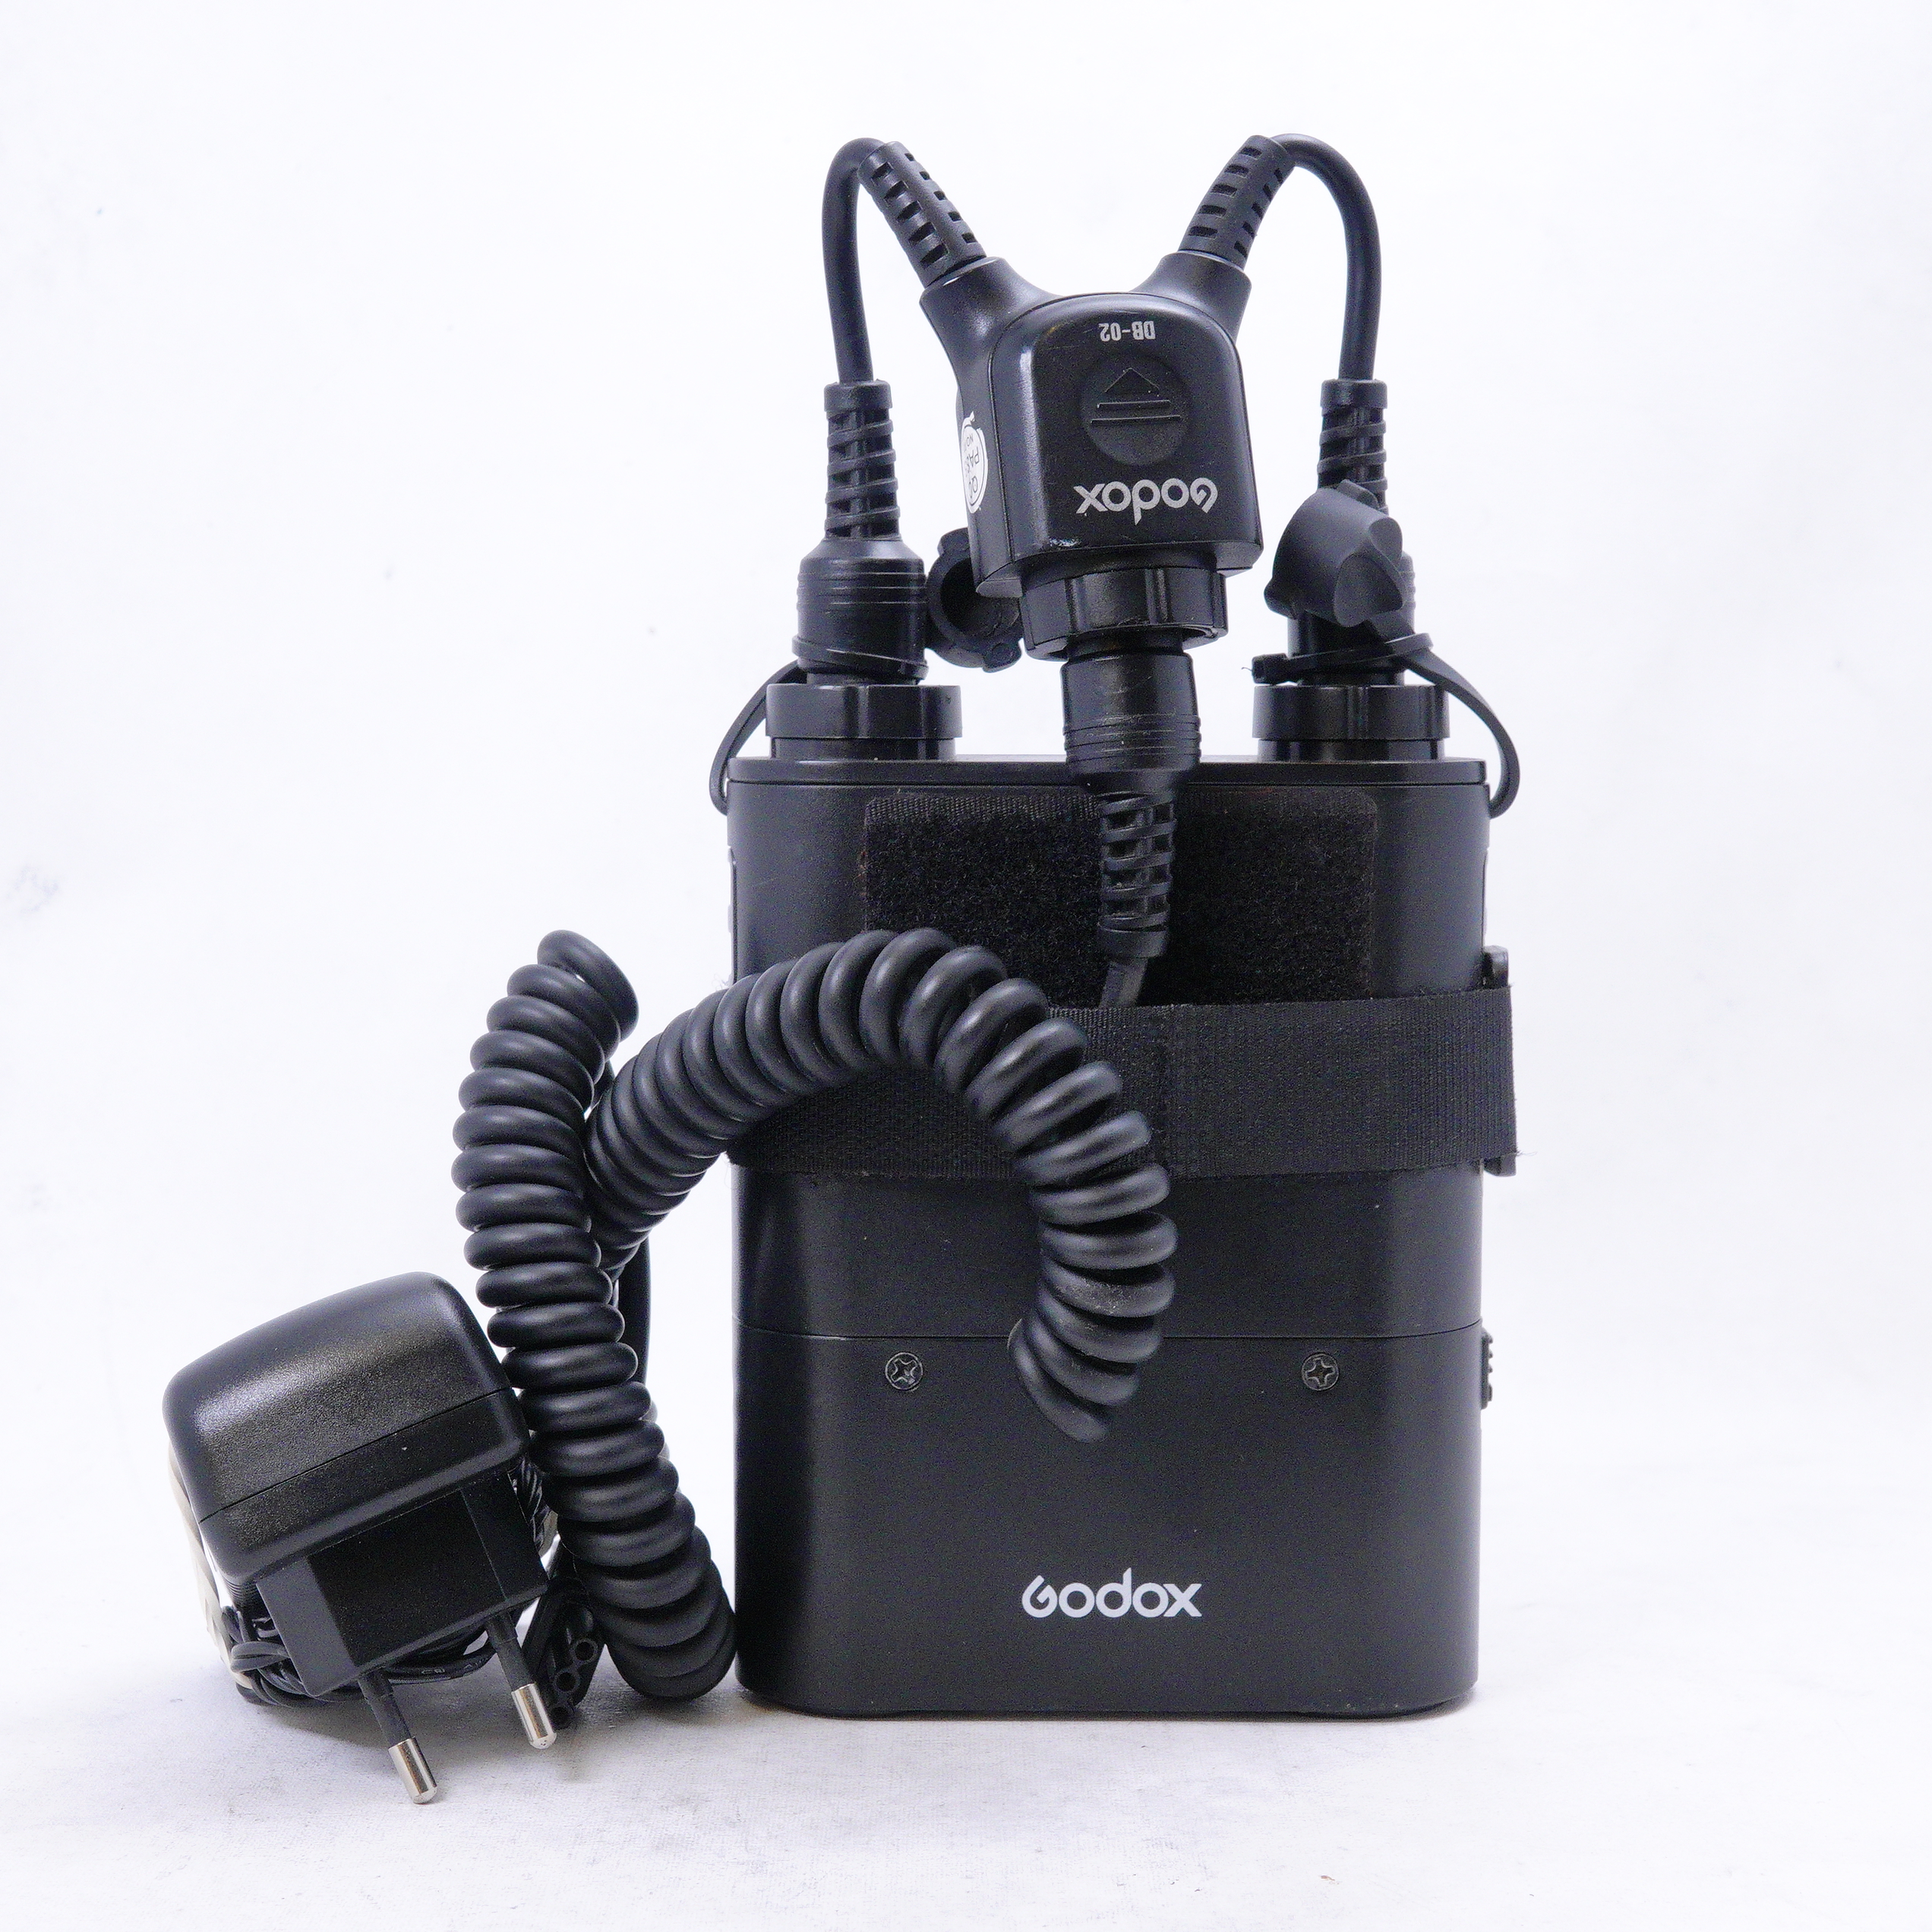 Propac PB-960 Godox con cable de alimentación doble más cargador - Usado